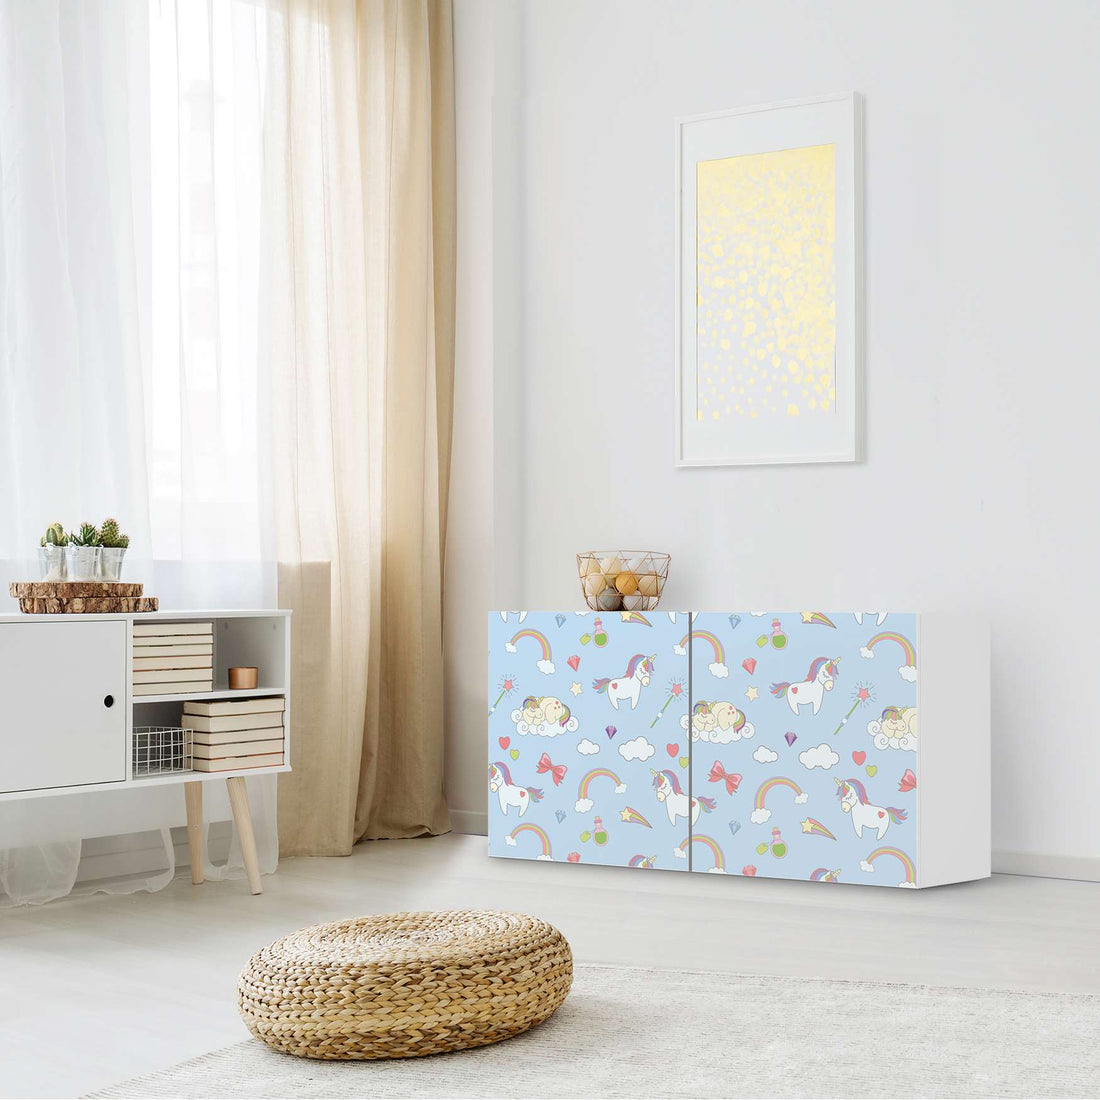 Folie für Möbel Rainbow Unicorn - IKEA Besta Regal Quer 2 Türen - Kinderzimmer